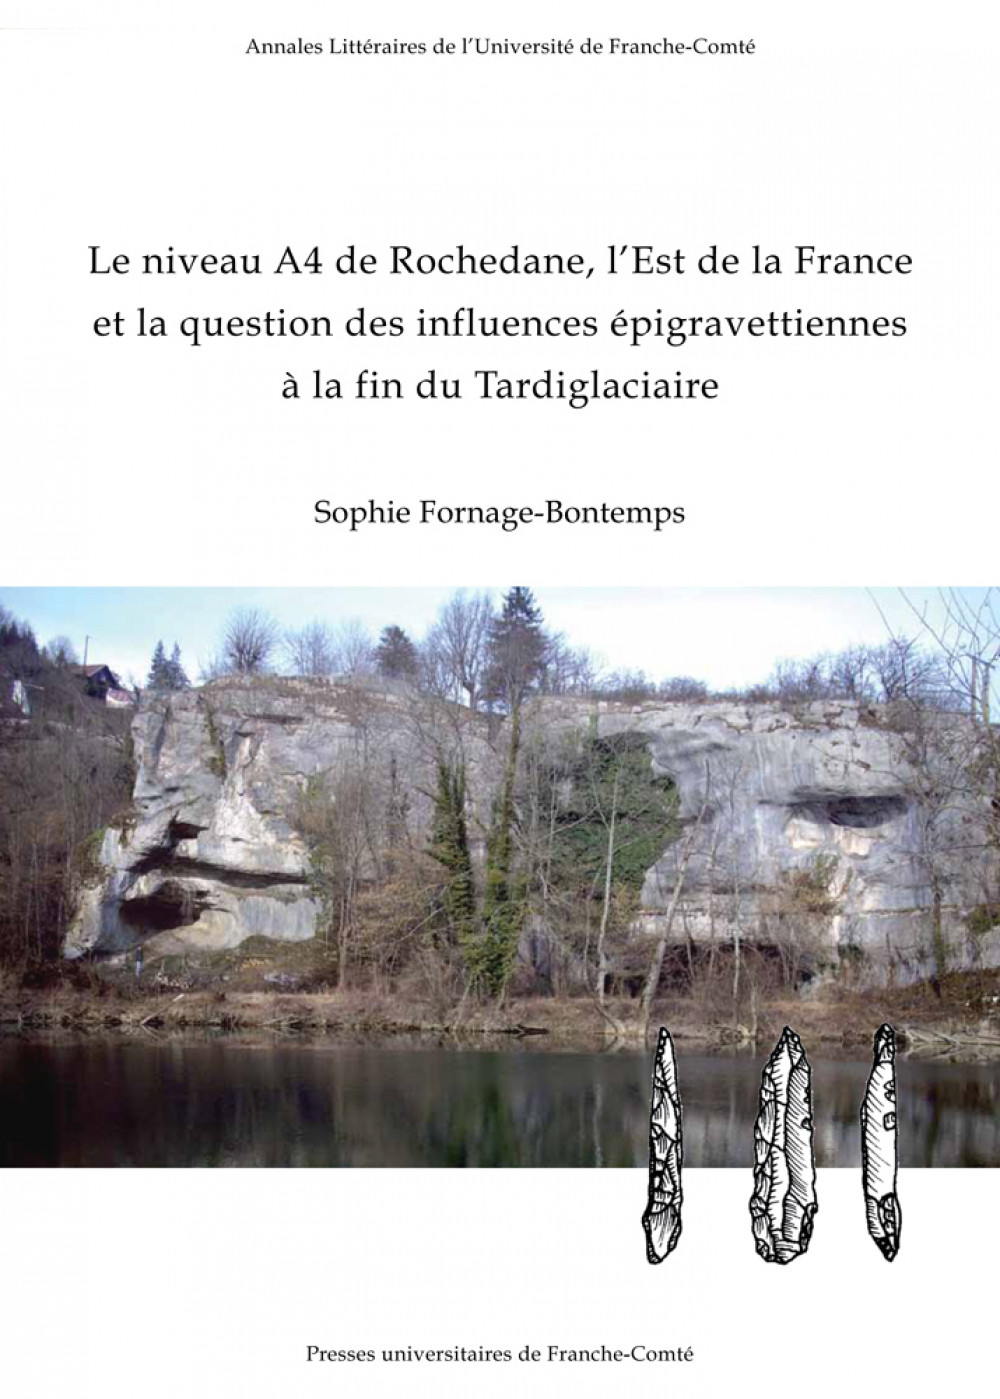 Le niveau A4 de Rochedane, l’Est de la France et la question des influences épigravettiennes à la fin du Tardiglaciaire